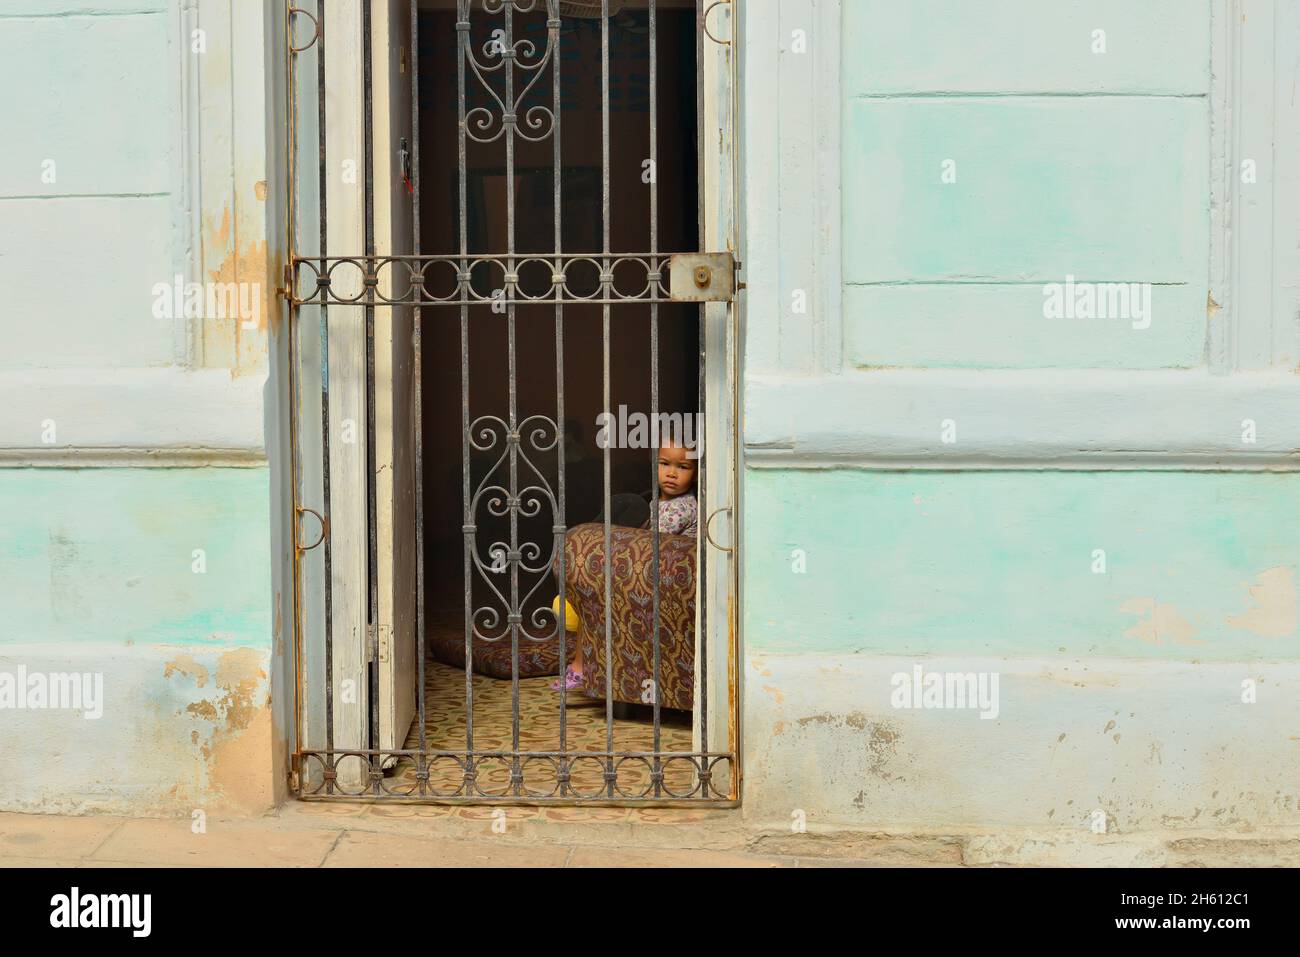 Scena stradale nel centro di l'Avana. Bambino piccolo che guarda fuori attraverso una porta con cancello, la Habana (l'Avana), Habana, Cuba Foto Stock